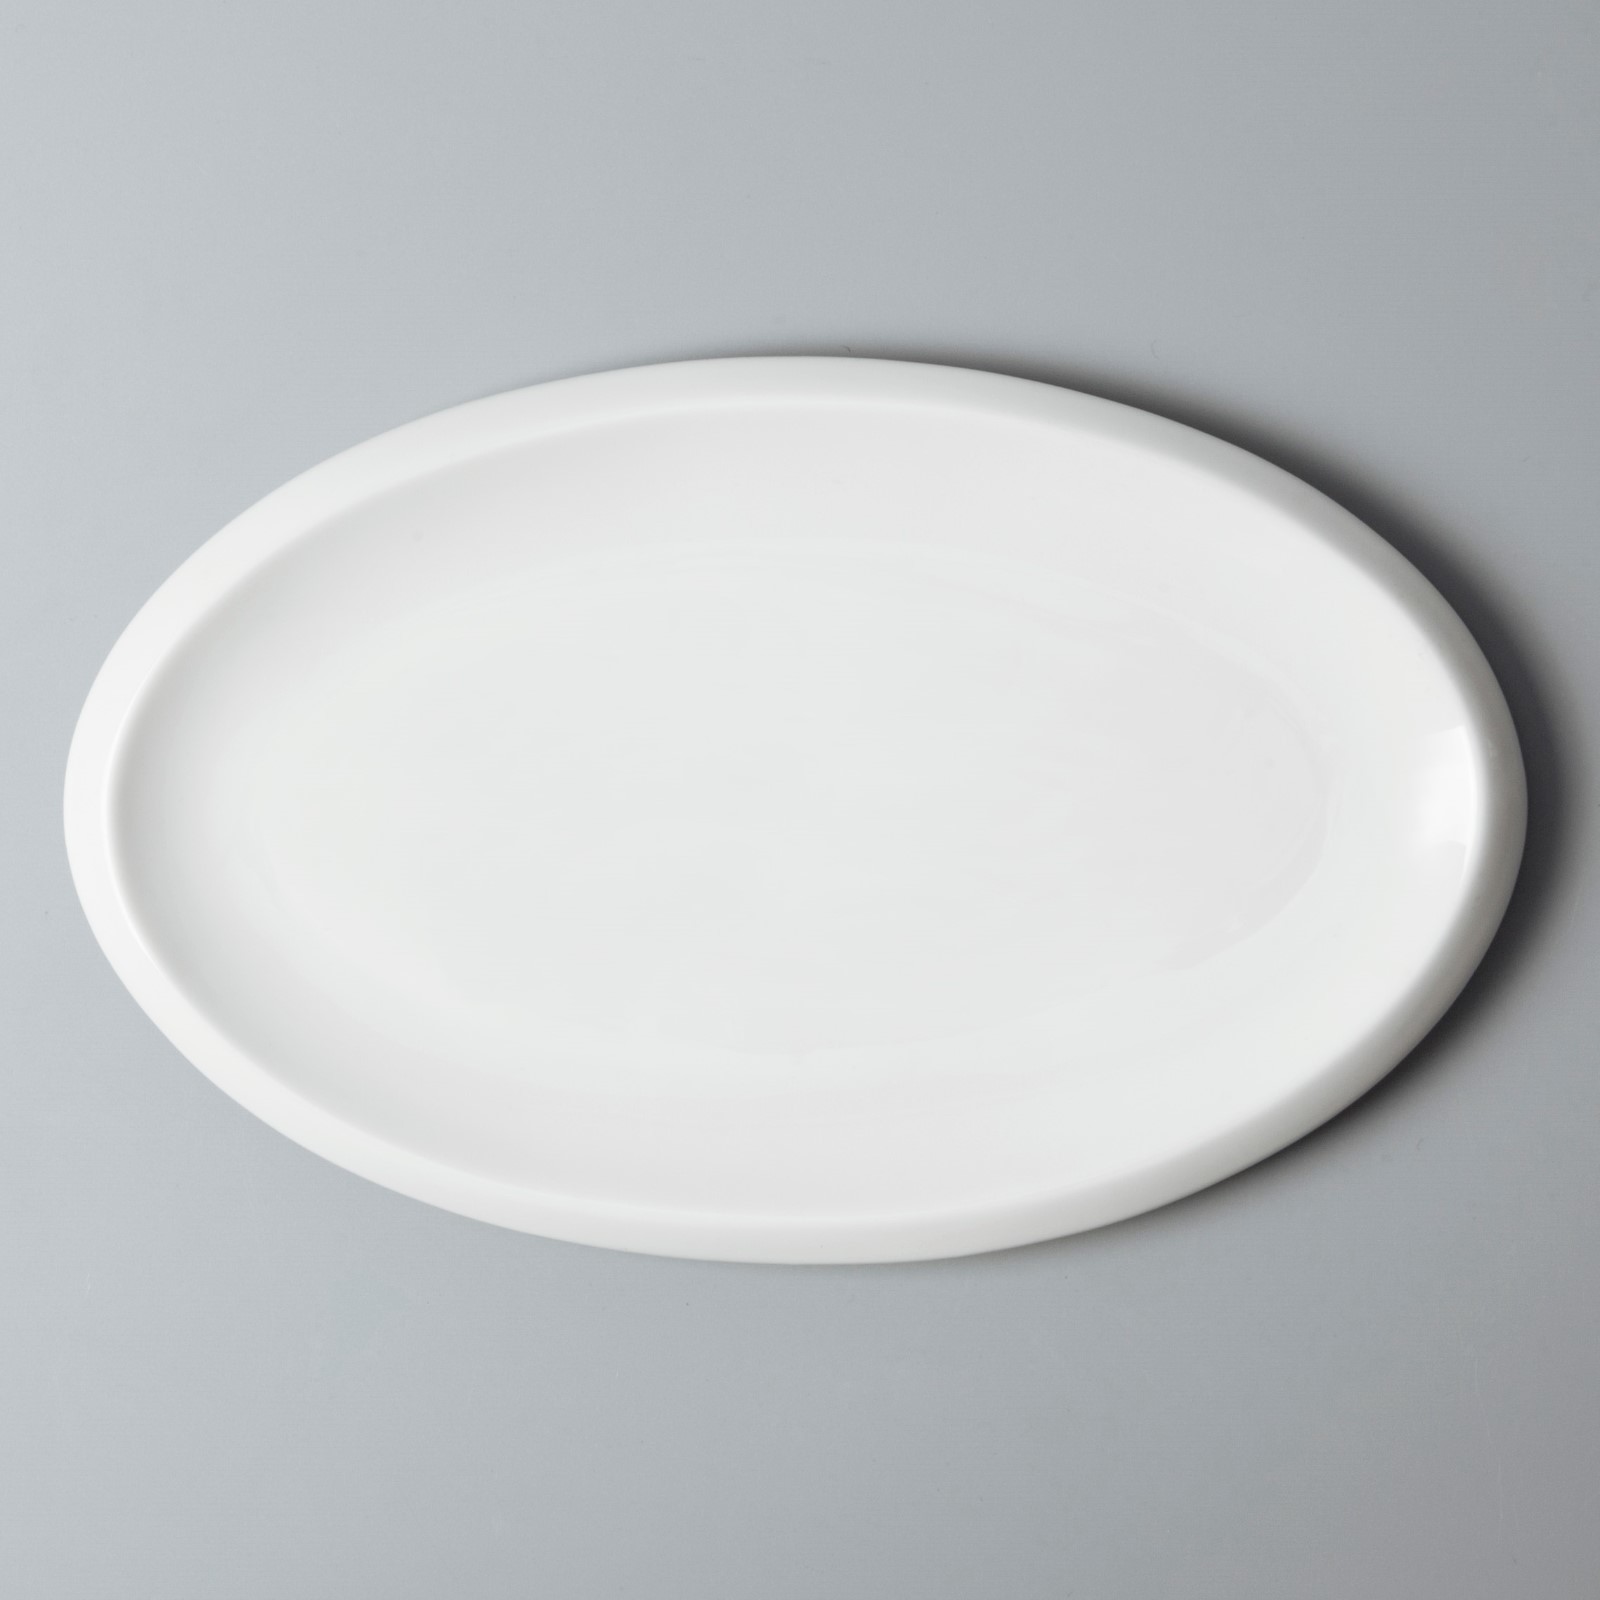 white porcelain tableware fashion bistro Warranty Two Eight